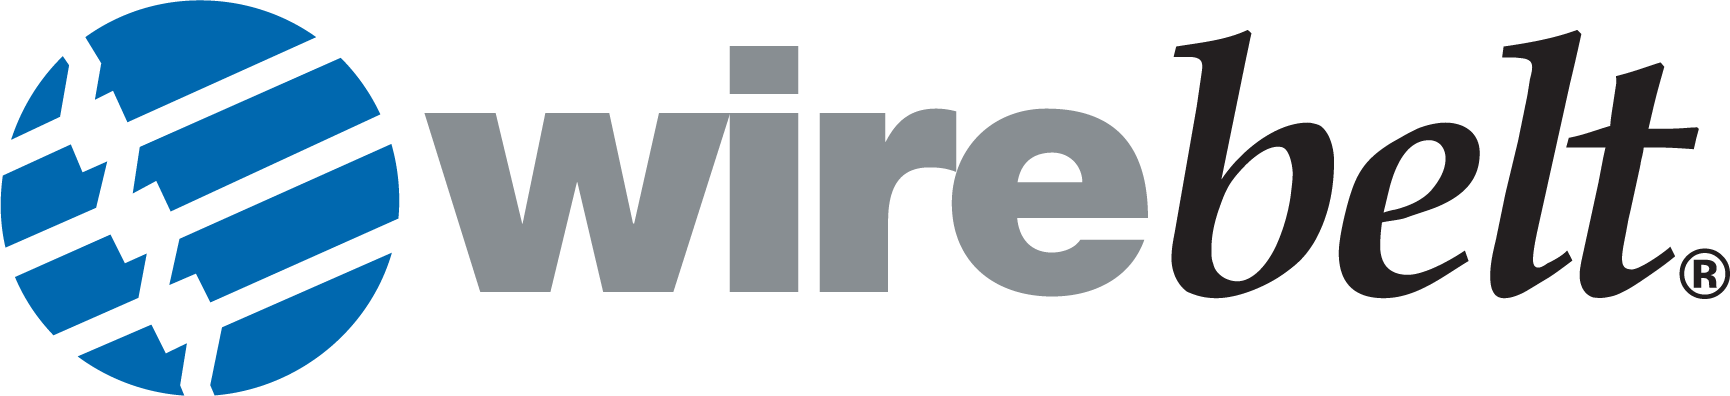 Wirebelt Logo